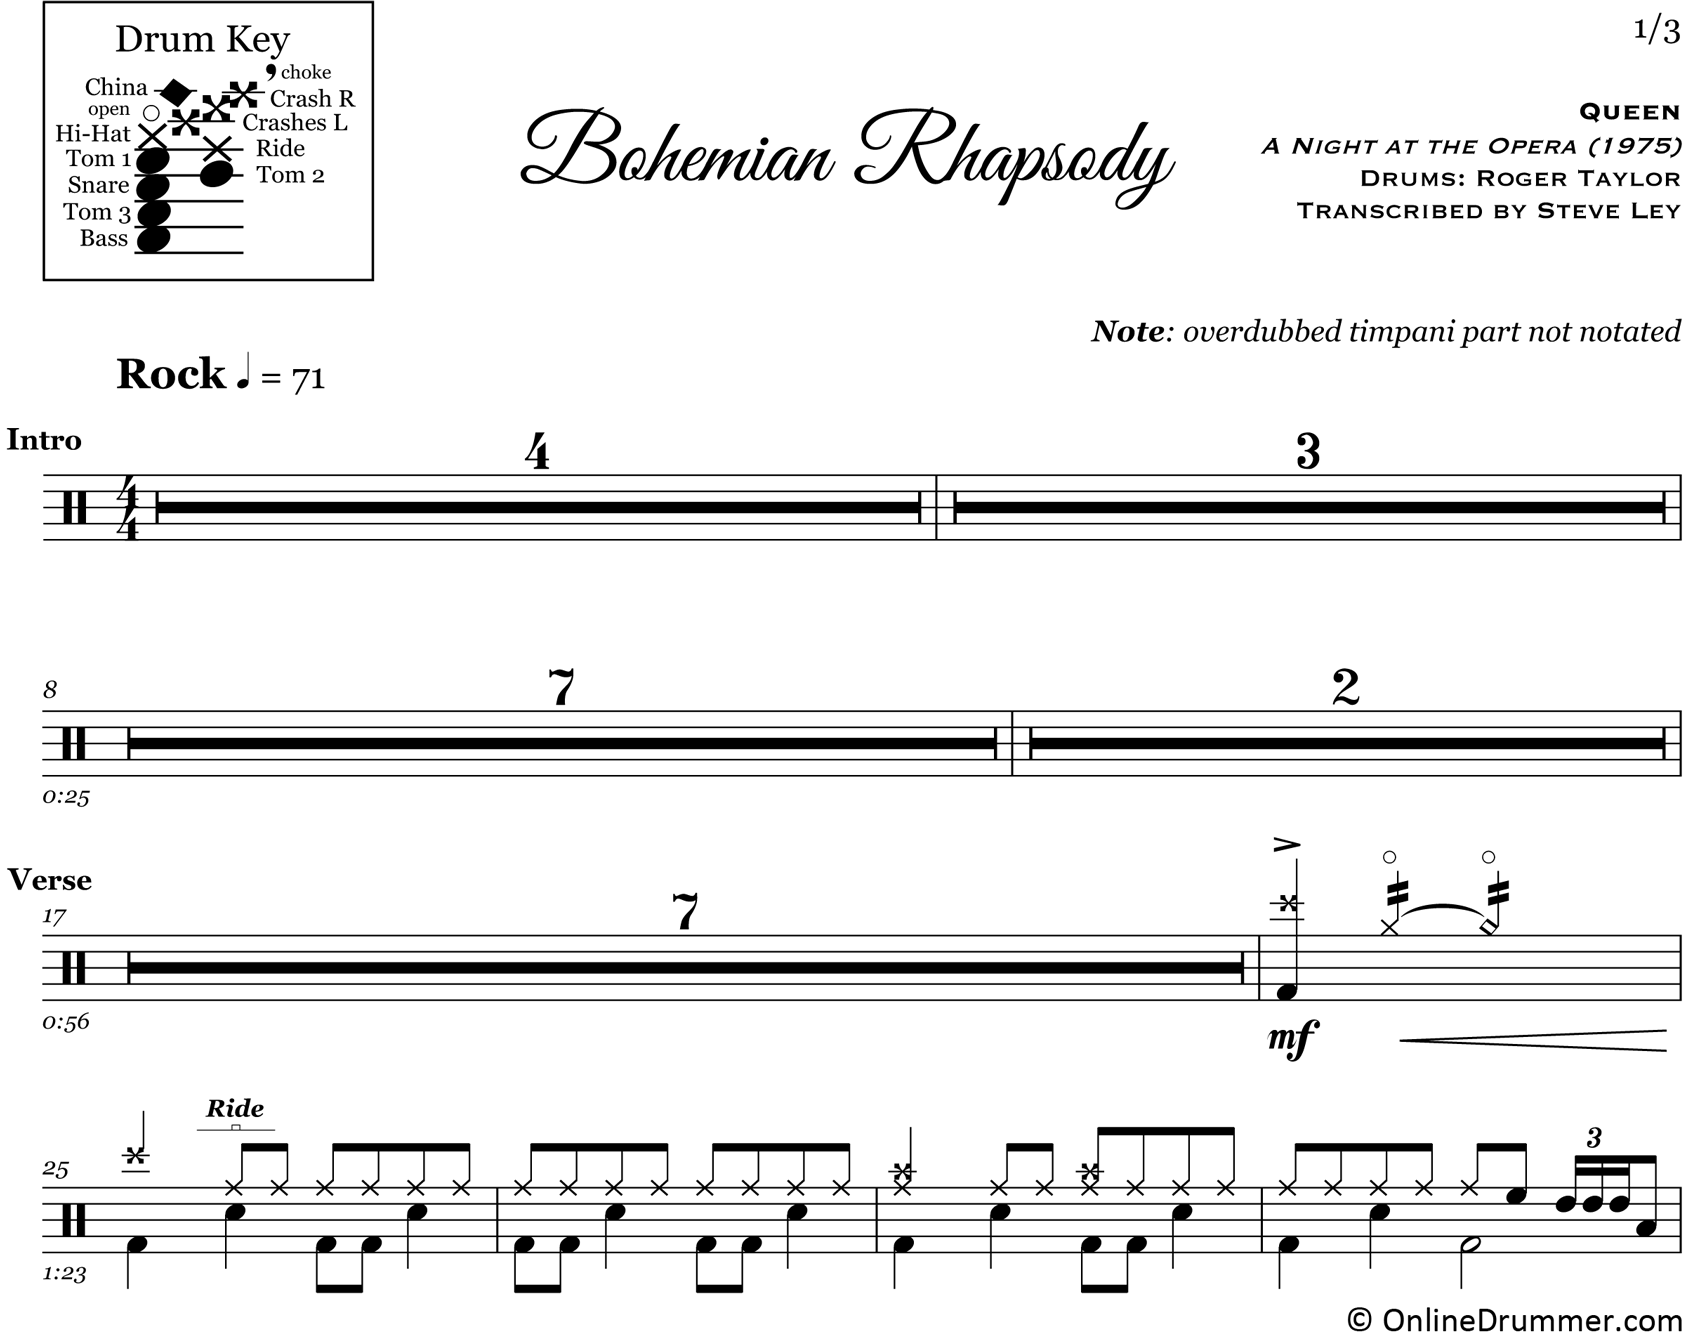 Bohemian Rhapsody - Queen - Drum Sheet Music